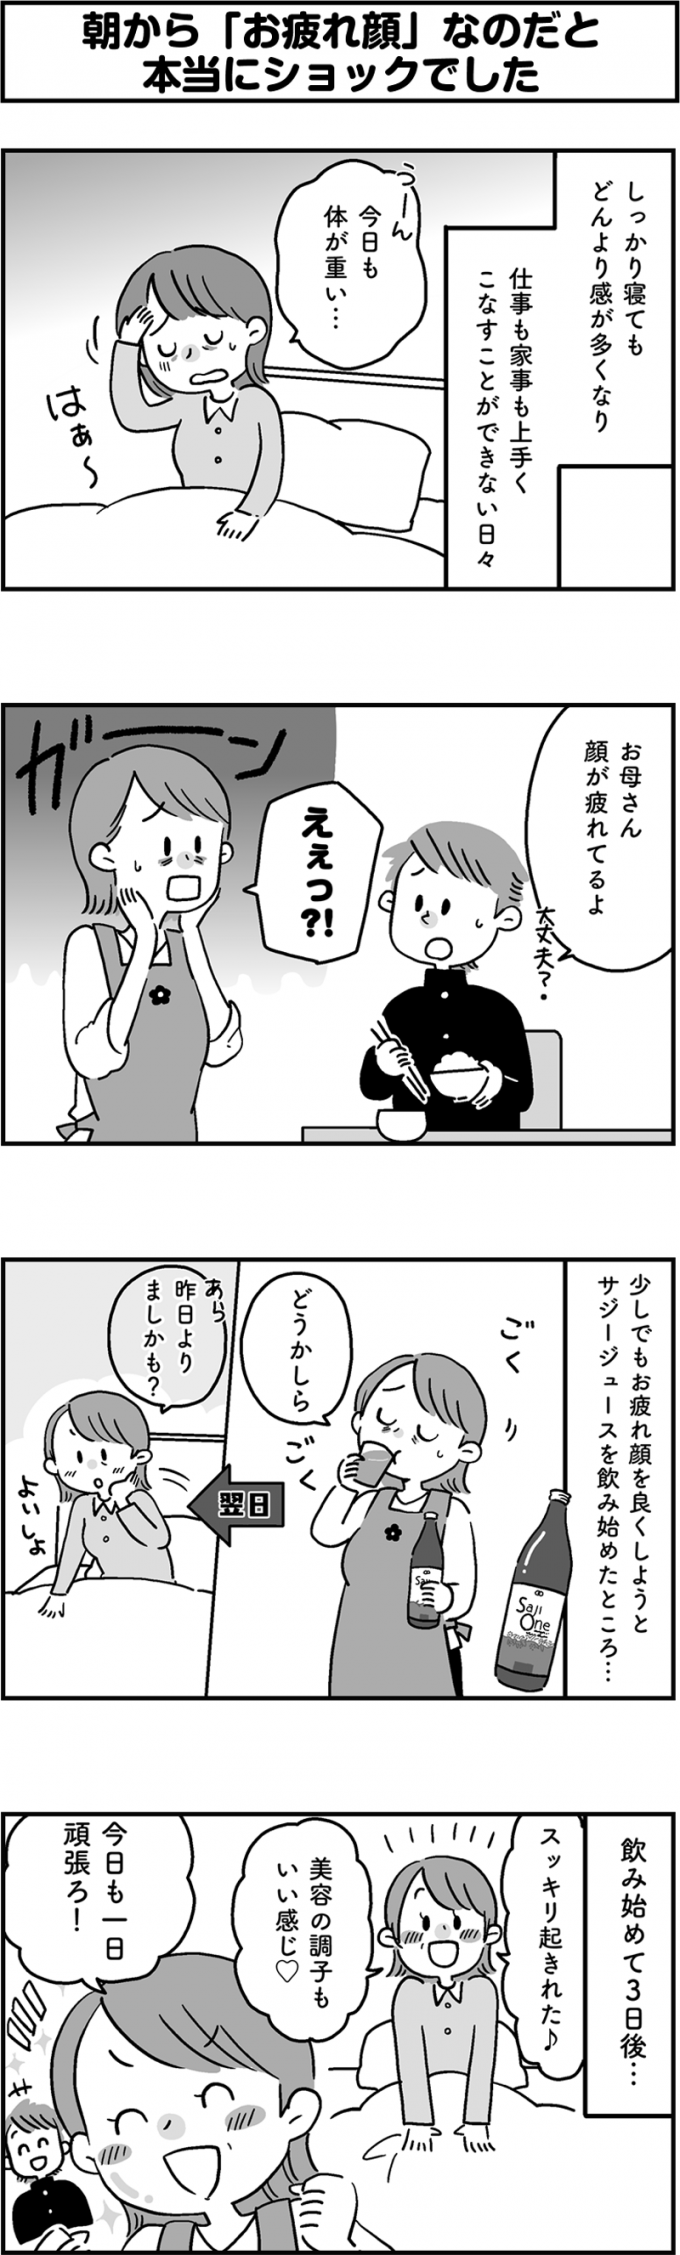 サジージュース「SajiOne」のPR4コマ漫画第2弾の画像2枚目